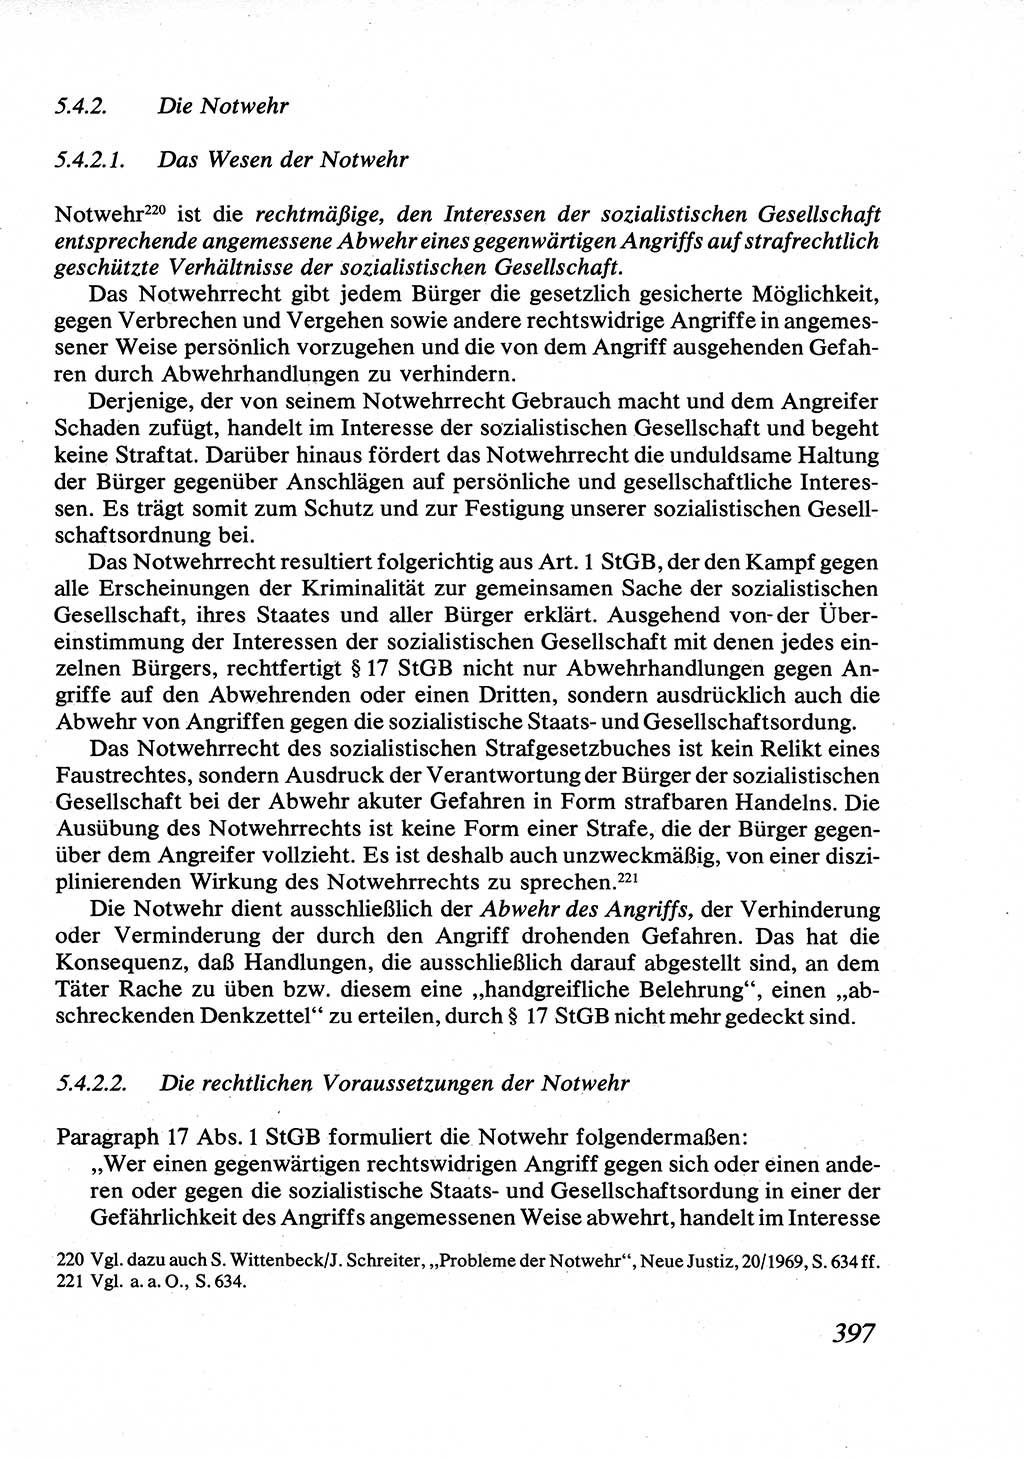 Strafrecht [Deutsche Demokratische Republik (DDR)], Allgemeiner Teil, Lehrbuch 1976, Seite 397 (Strafr. DDR AT Lb. 1976, S. 397)